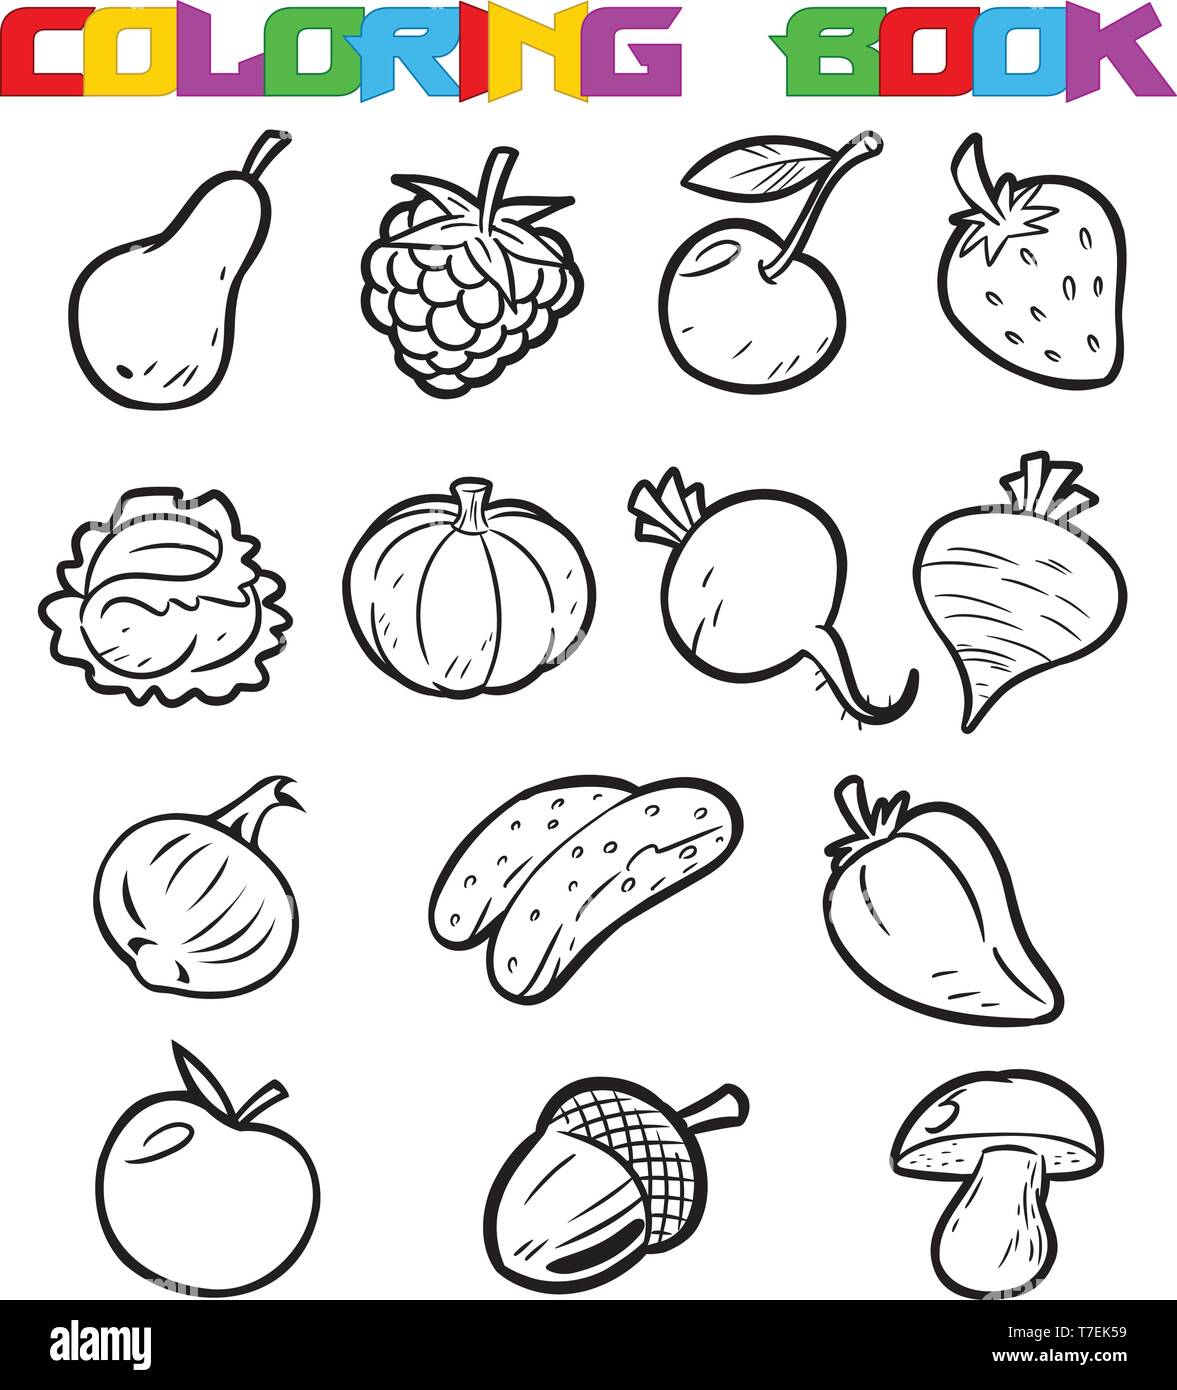 Obst und Gemüse zum Ausmalen Stock Vektorgrafik   Alamy